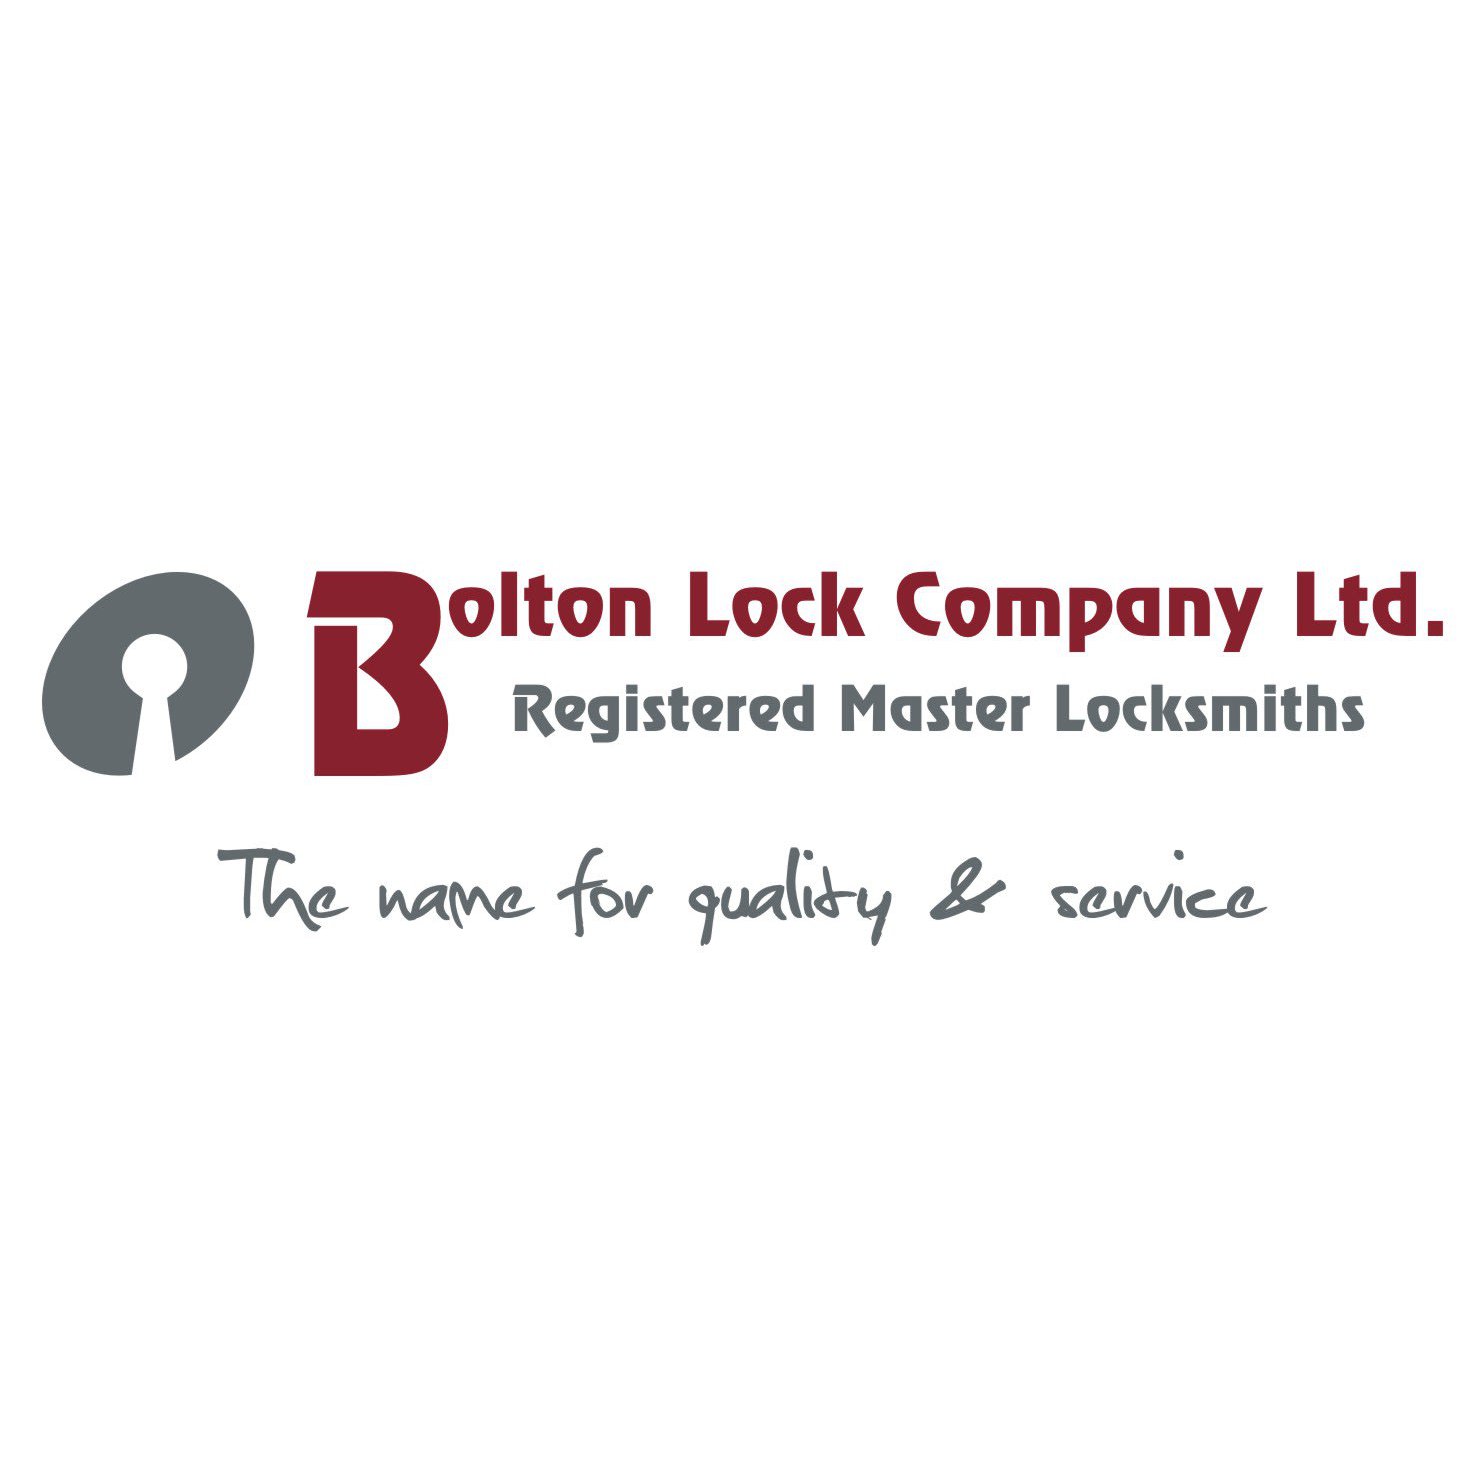 Bolton Lock Company Ltd Logo